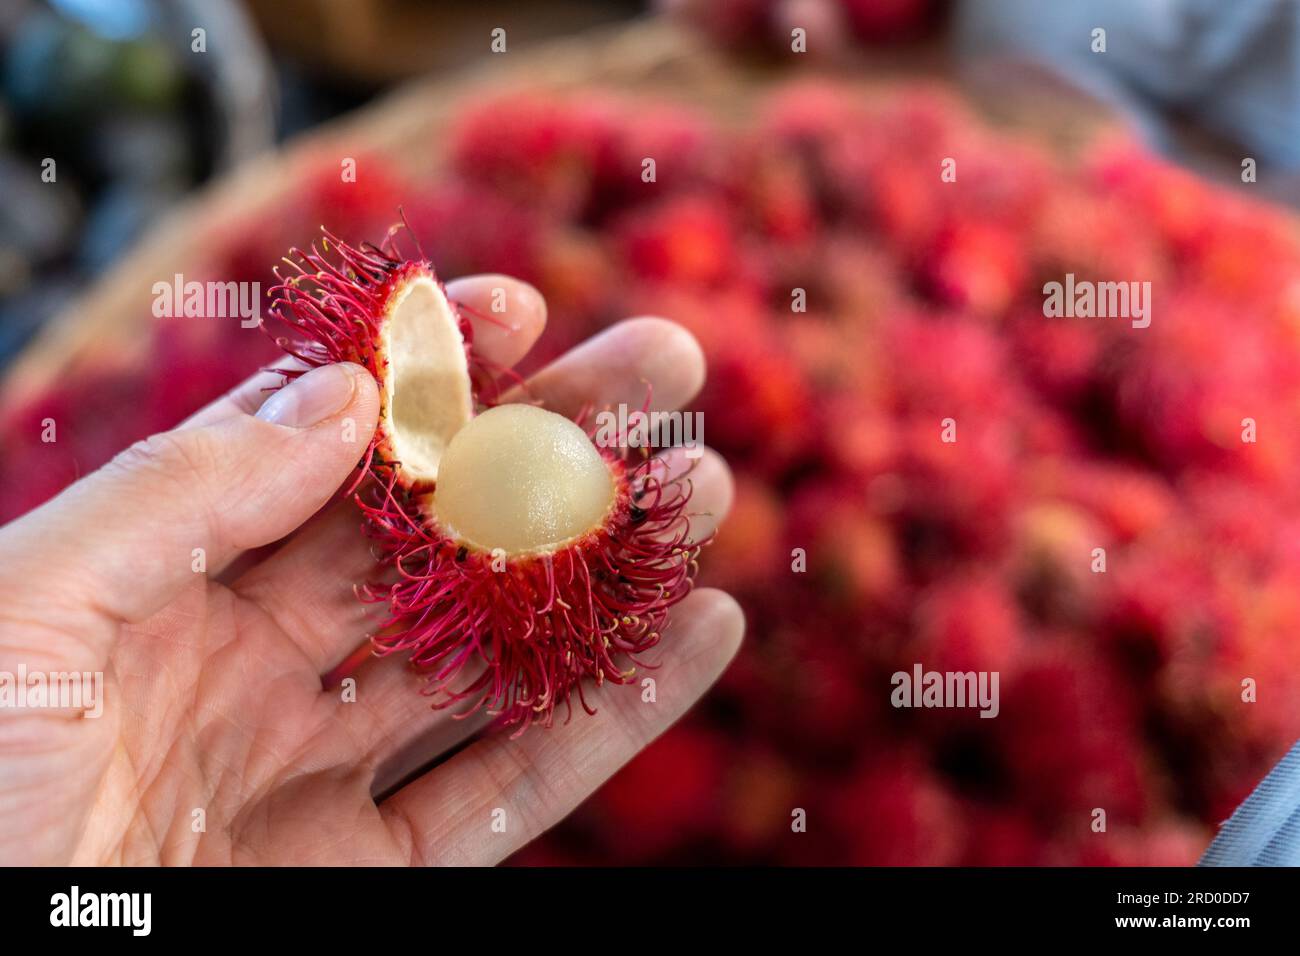 Nahaufnahme eines reifen Rambutan (Nephelium lappaceum), Einer Frucht, die von Südostasien stammt, in einer weißen Hand an einem Stand auf dem farbenfrohen Markt „Mercado mayoreo“ Stockfoto